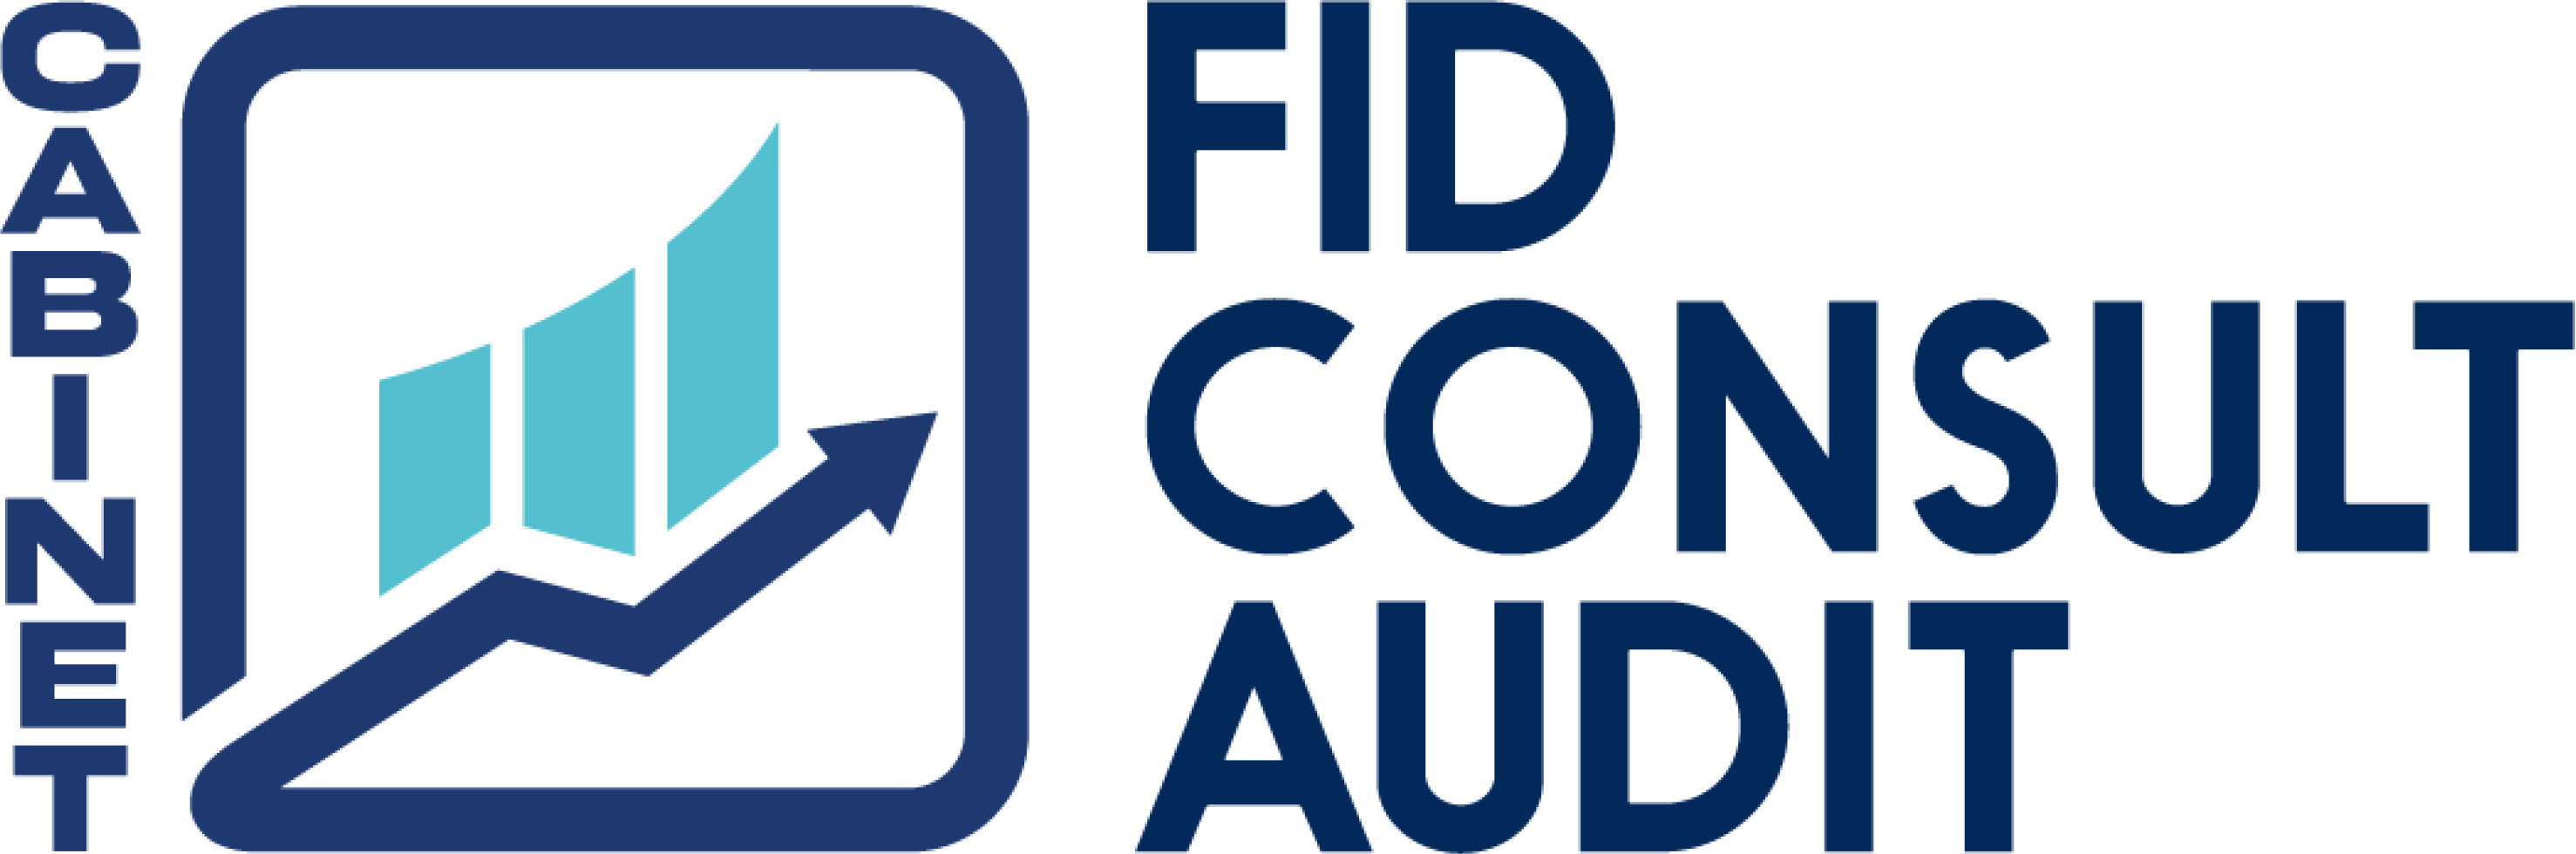 Fid Consult Audit